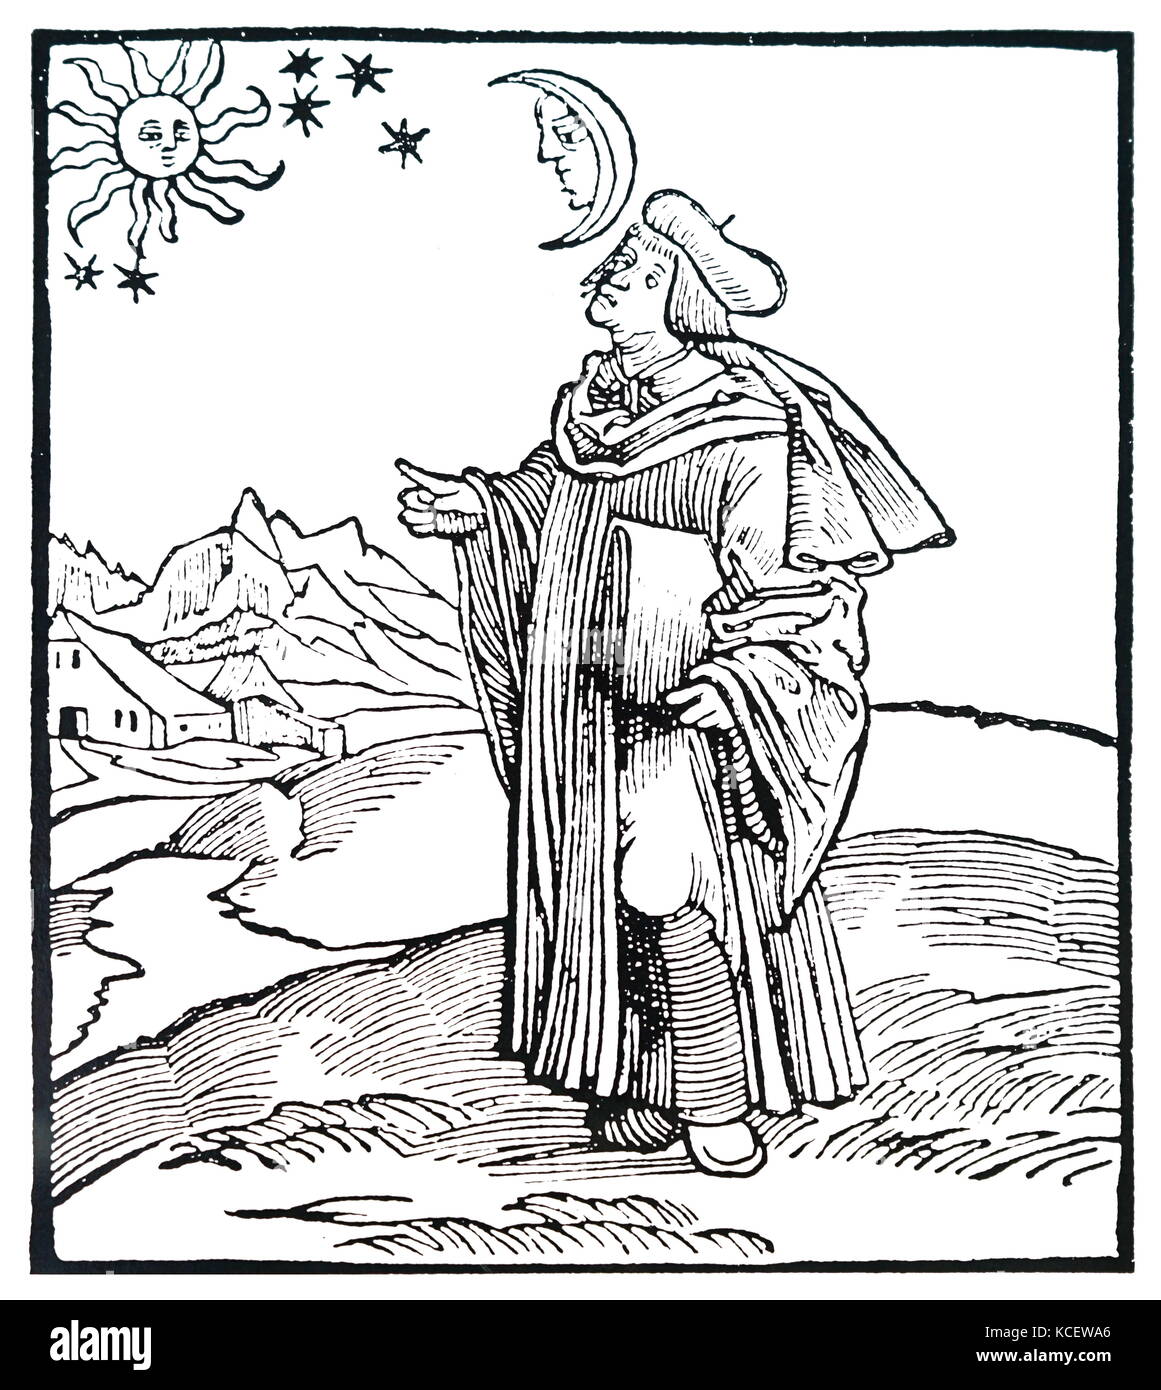 Xilografia raffigurante un astrologo di Hans Holbein il Giovane (1497-1543) un tedesco e artista svizzero e Printmaker del Nord in stile rinascimentale. Datata XVI Secolo Foto Stock